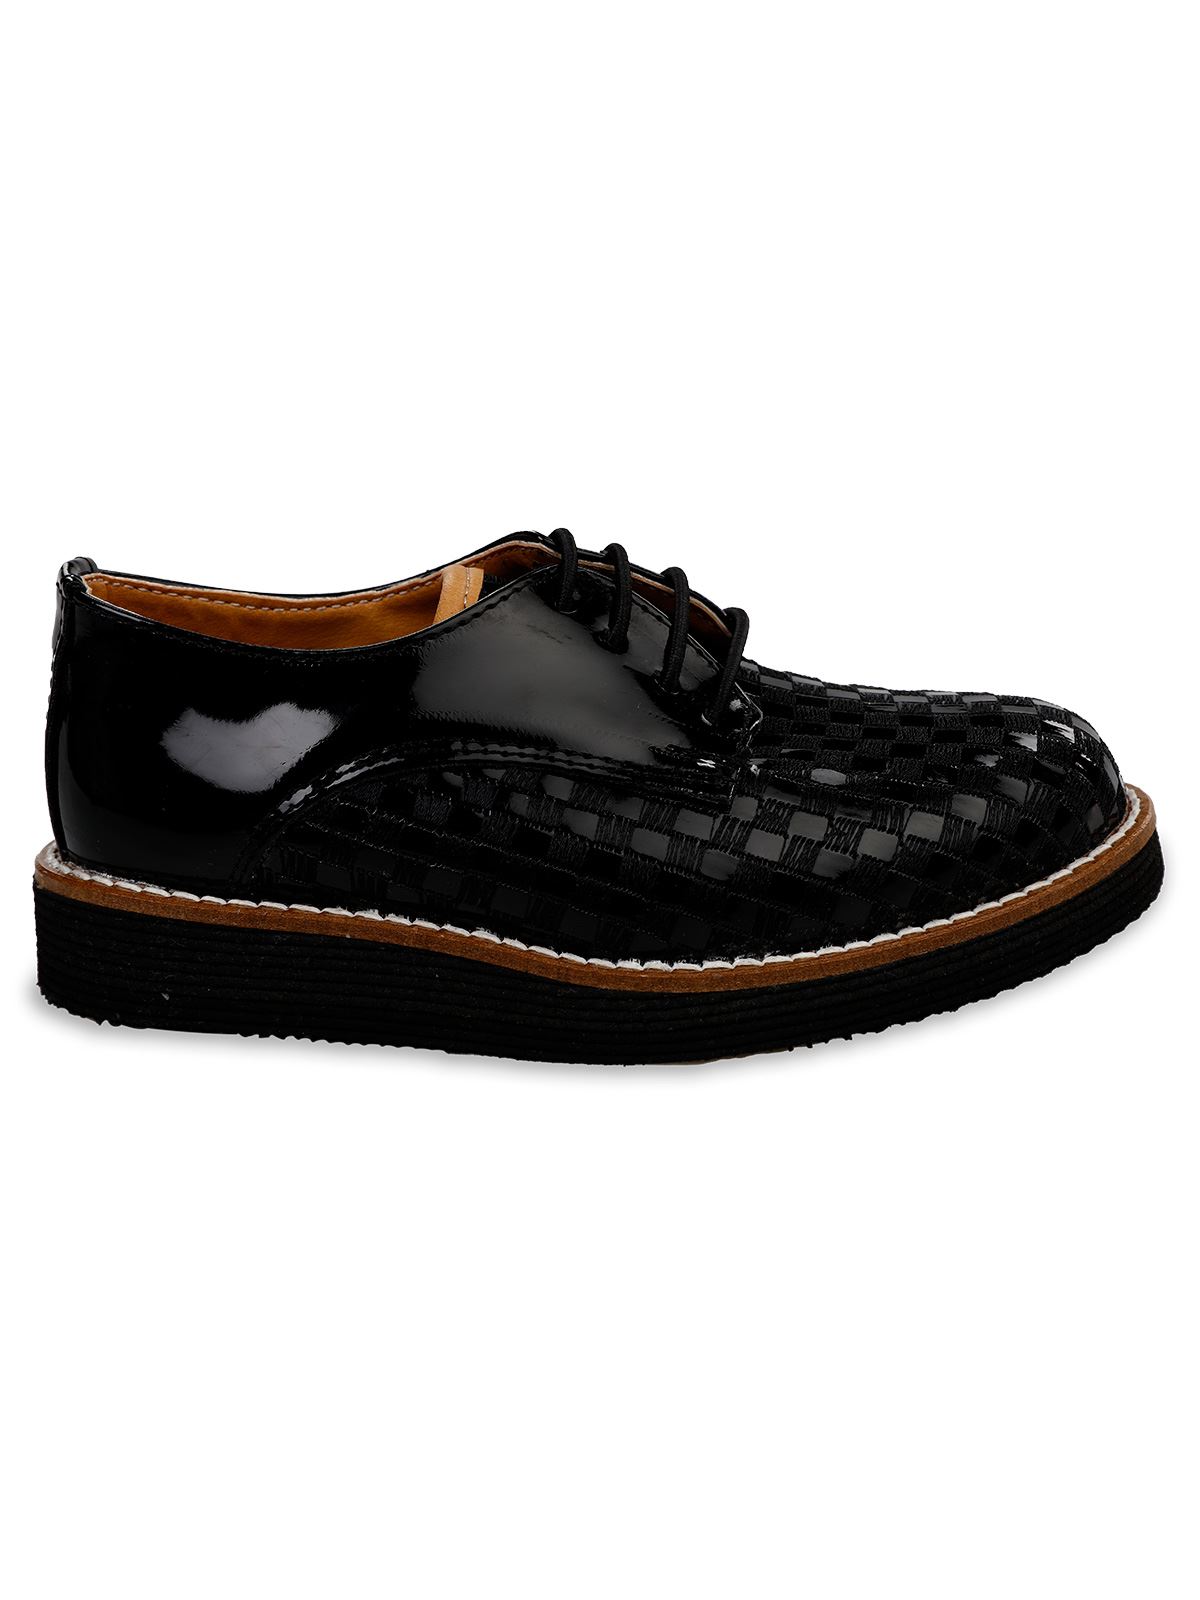 Harli Erkek Çocuk Klasik Ayakkabı 26-30 Numara Siyah